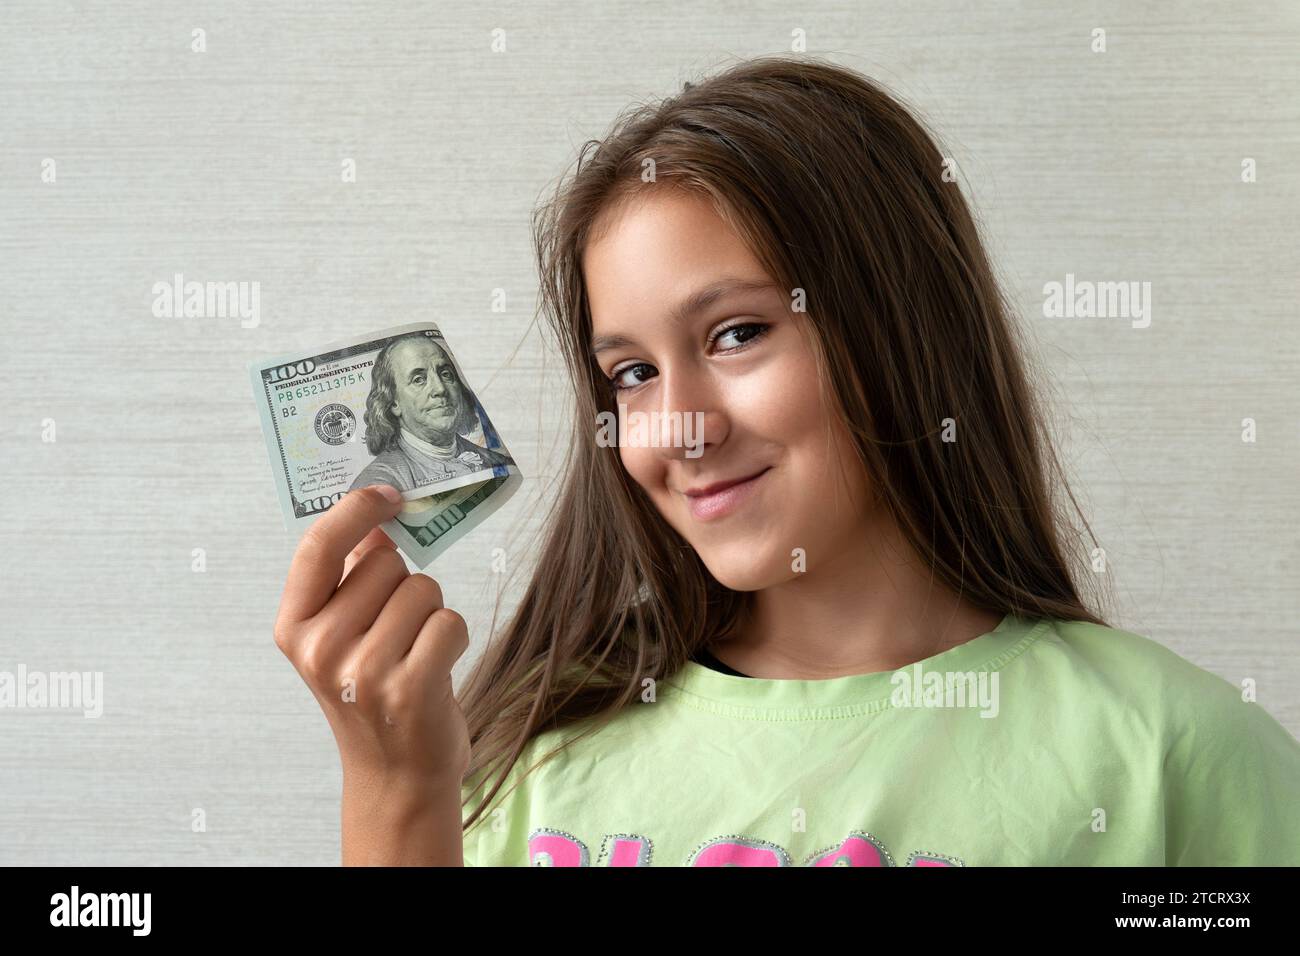 concetto di persone - adolescente sorridente in pullover che detiene centinaia di banconote in denaro da dollari su sfondo grigio Foto Stock